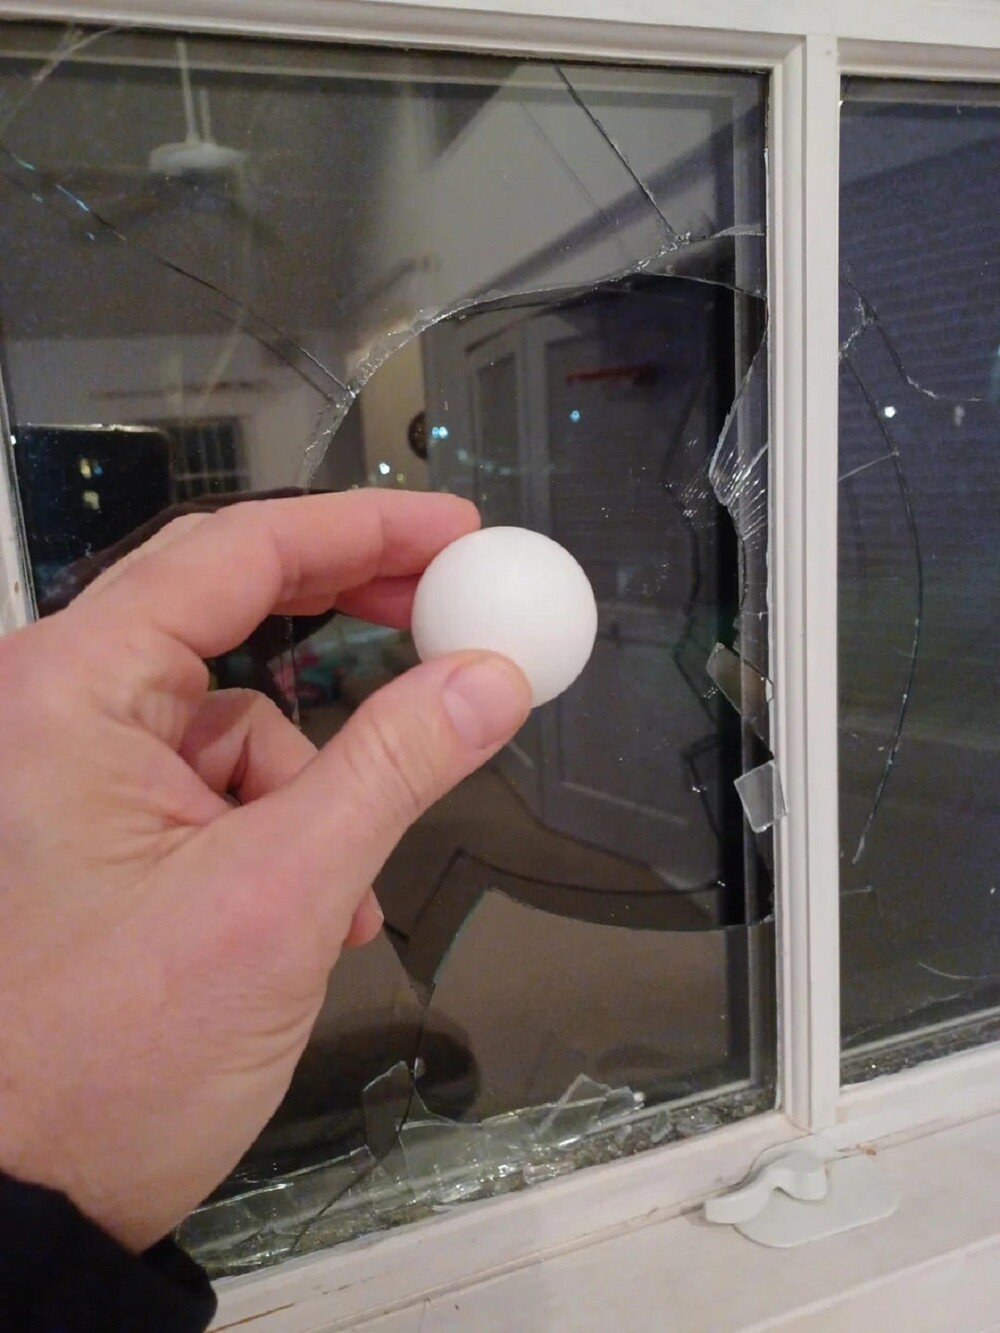 9. "10-летний сын разбил окно, когда играл в пинг-понг"